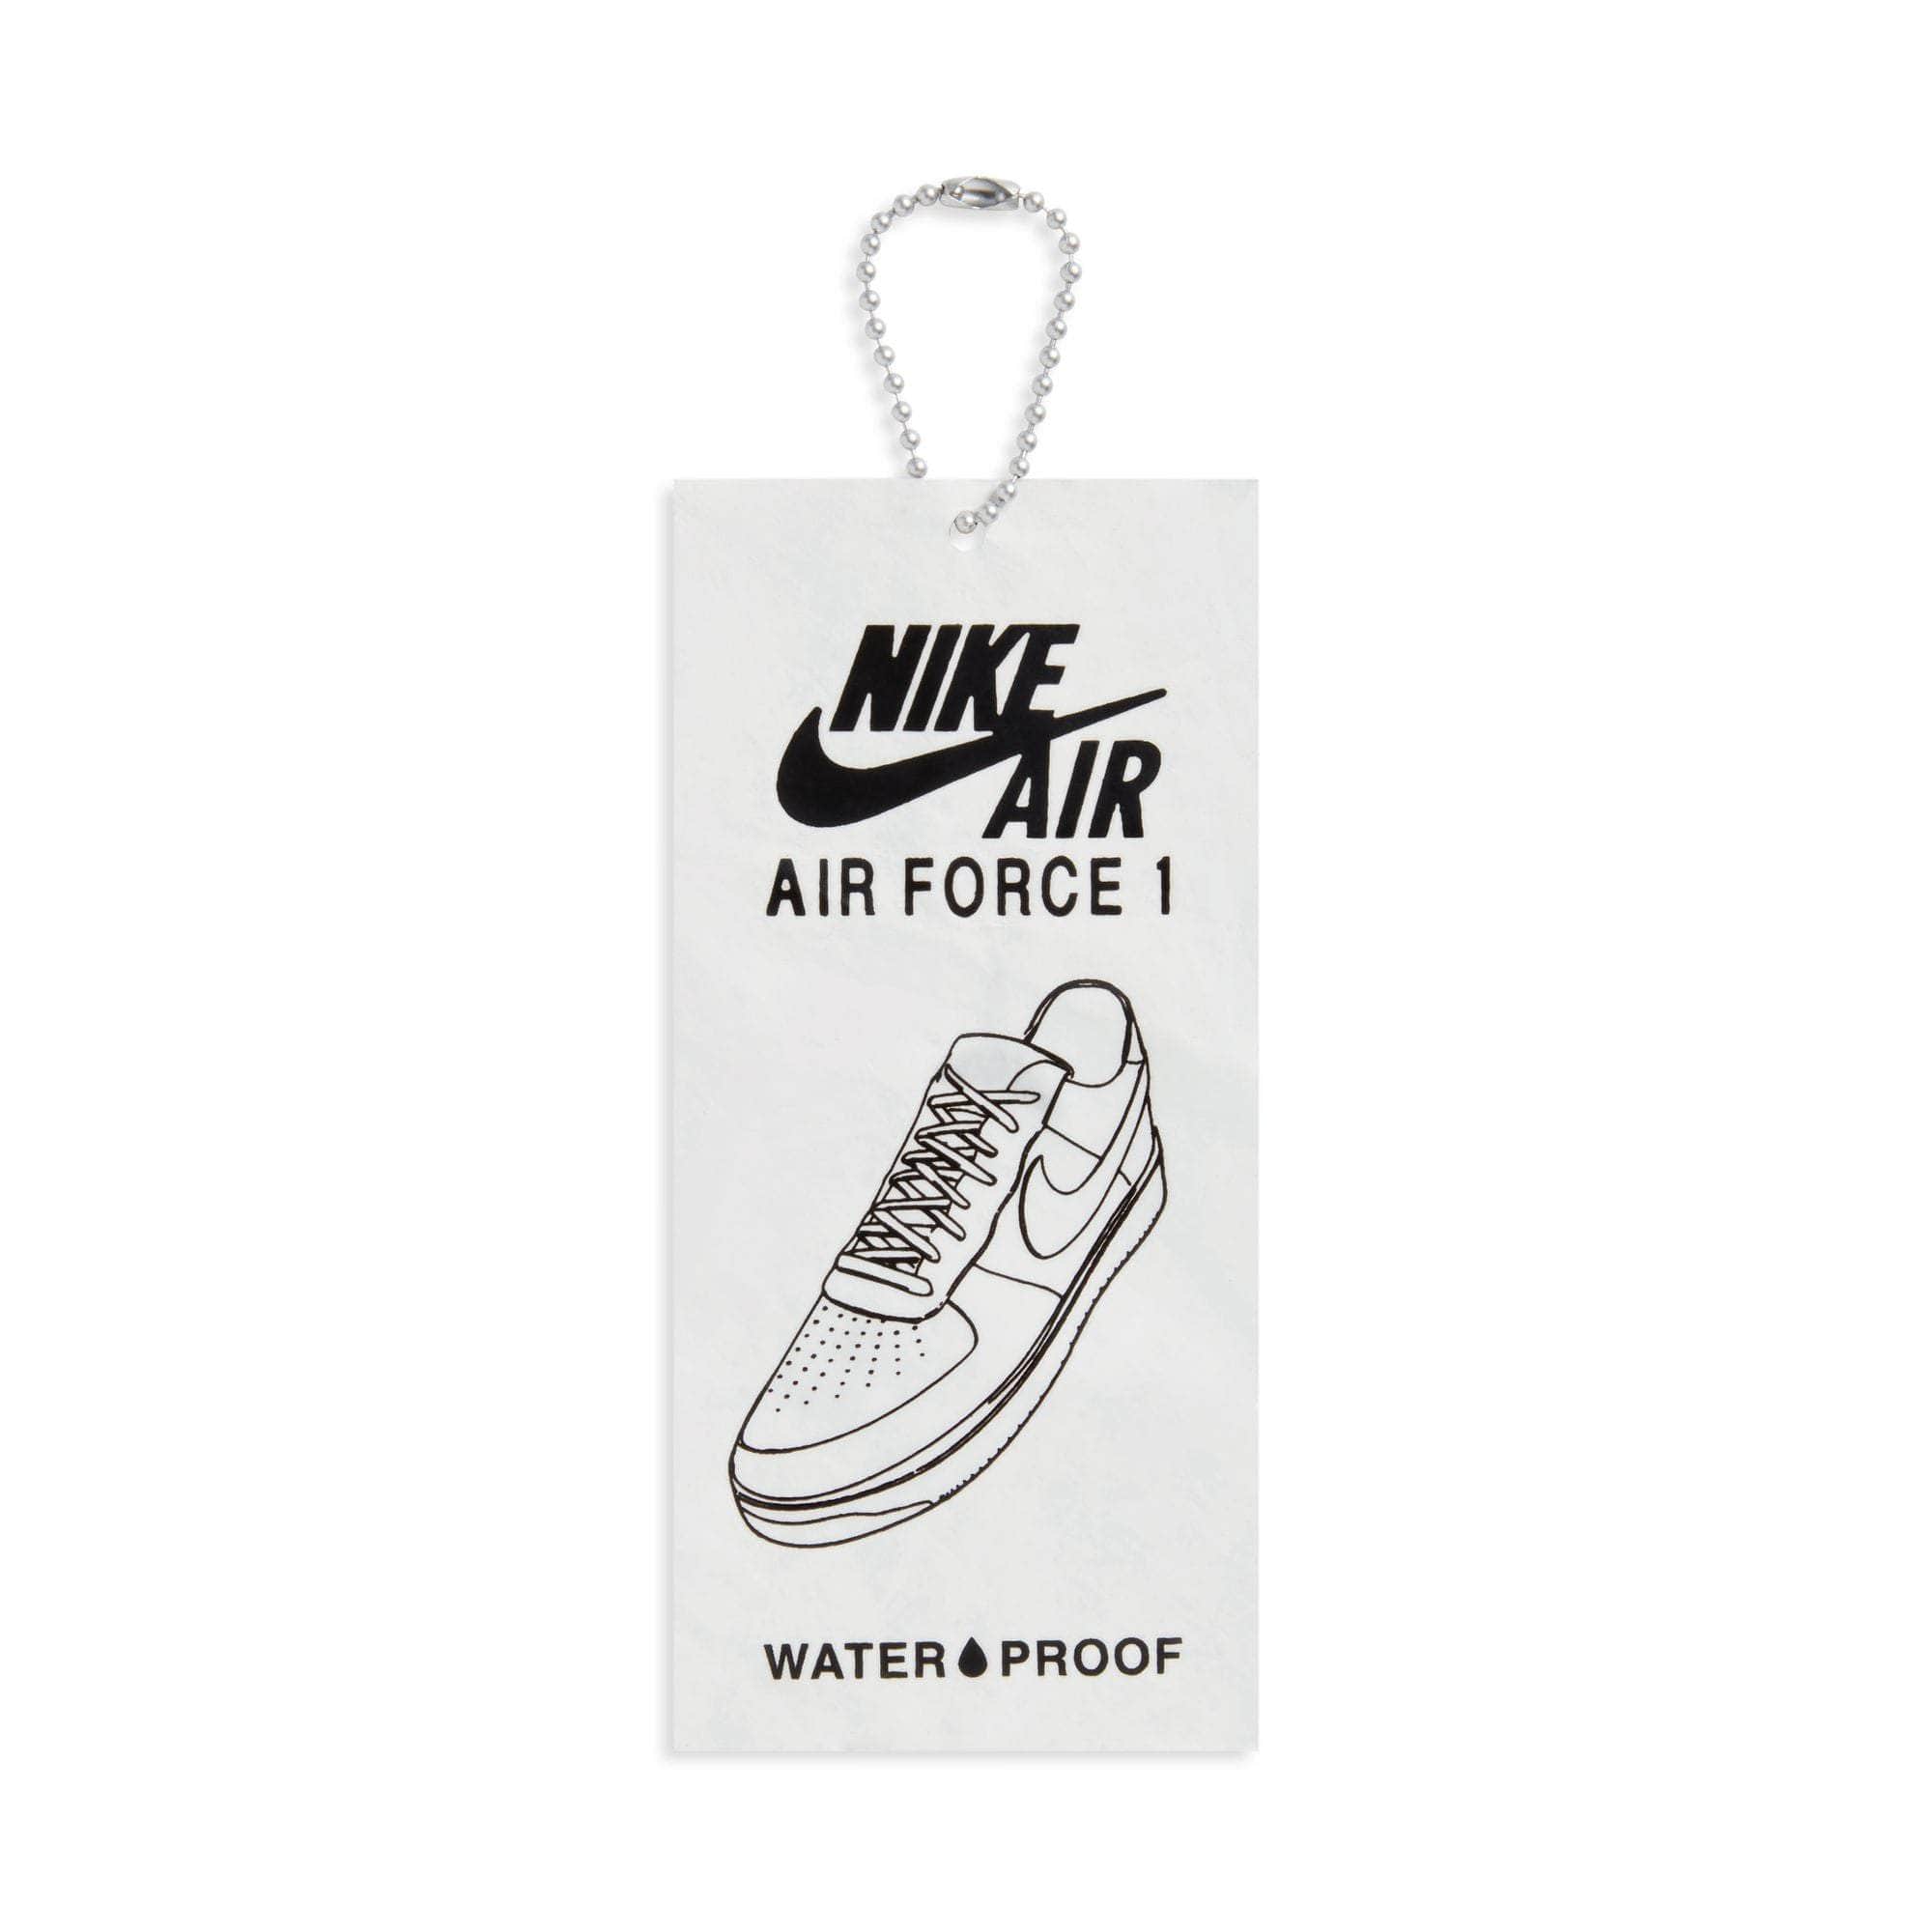 NIKE FOOTWEAR Nike Air Force 1 Low "Waterproof" - Men's